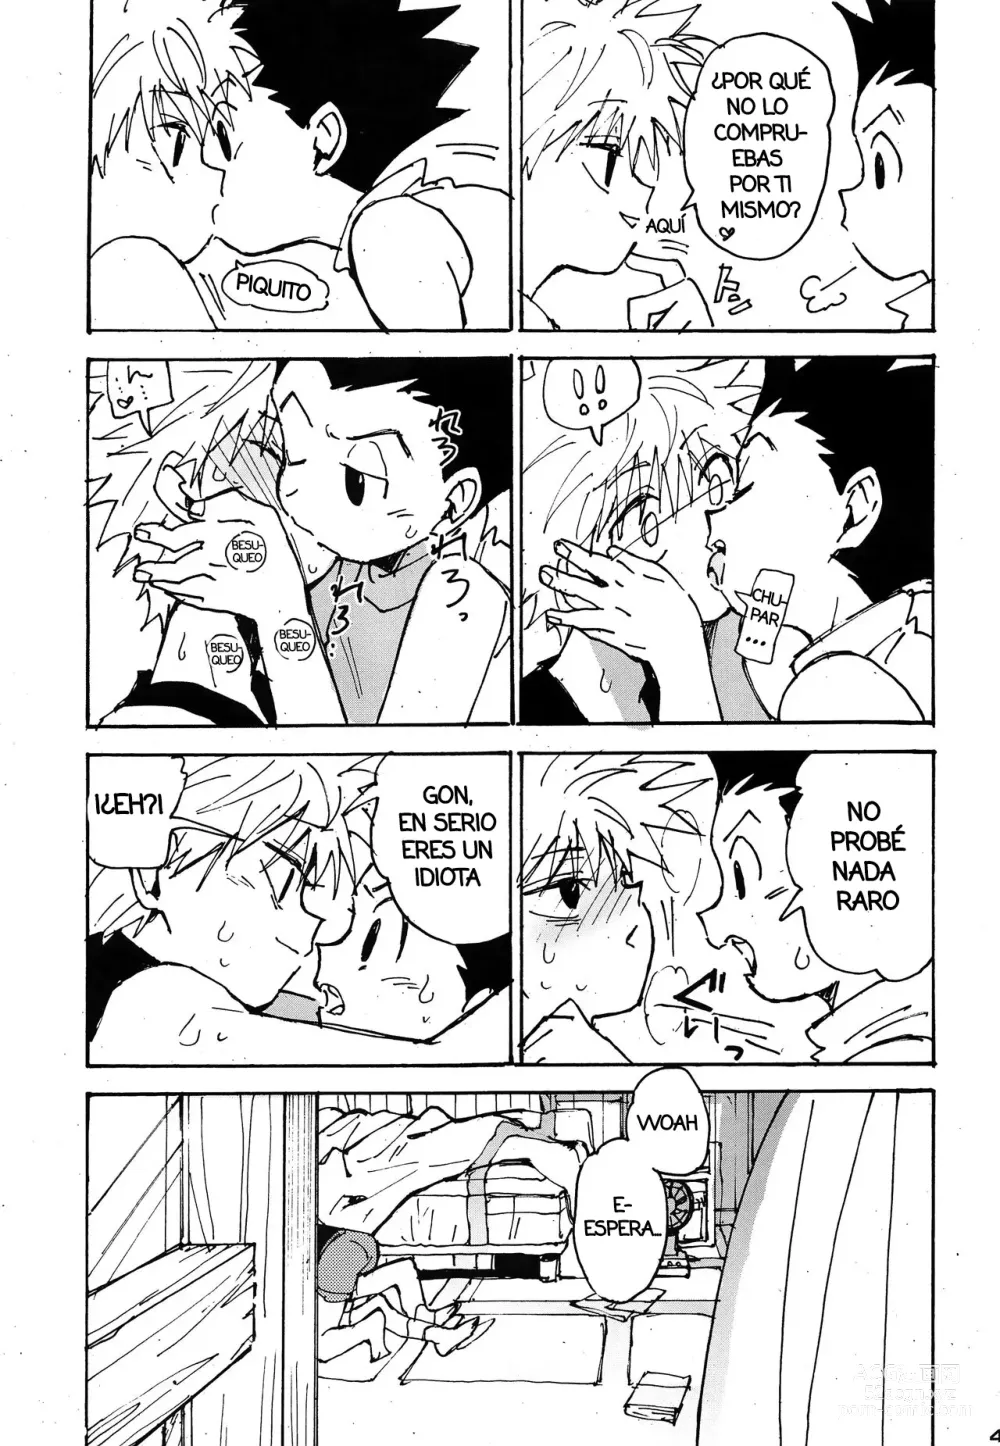 Page 46 of doujinshi Imprudencia Juvenil